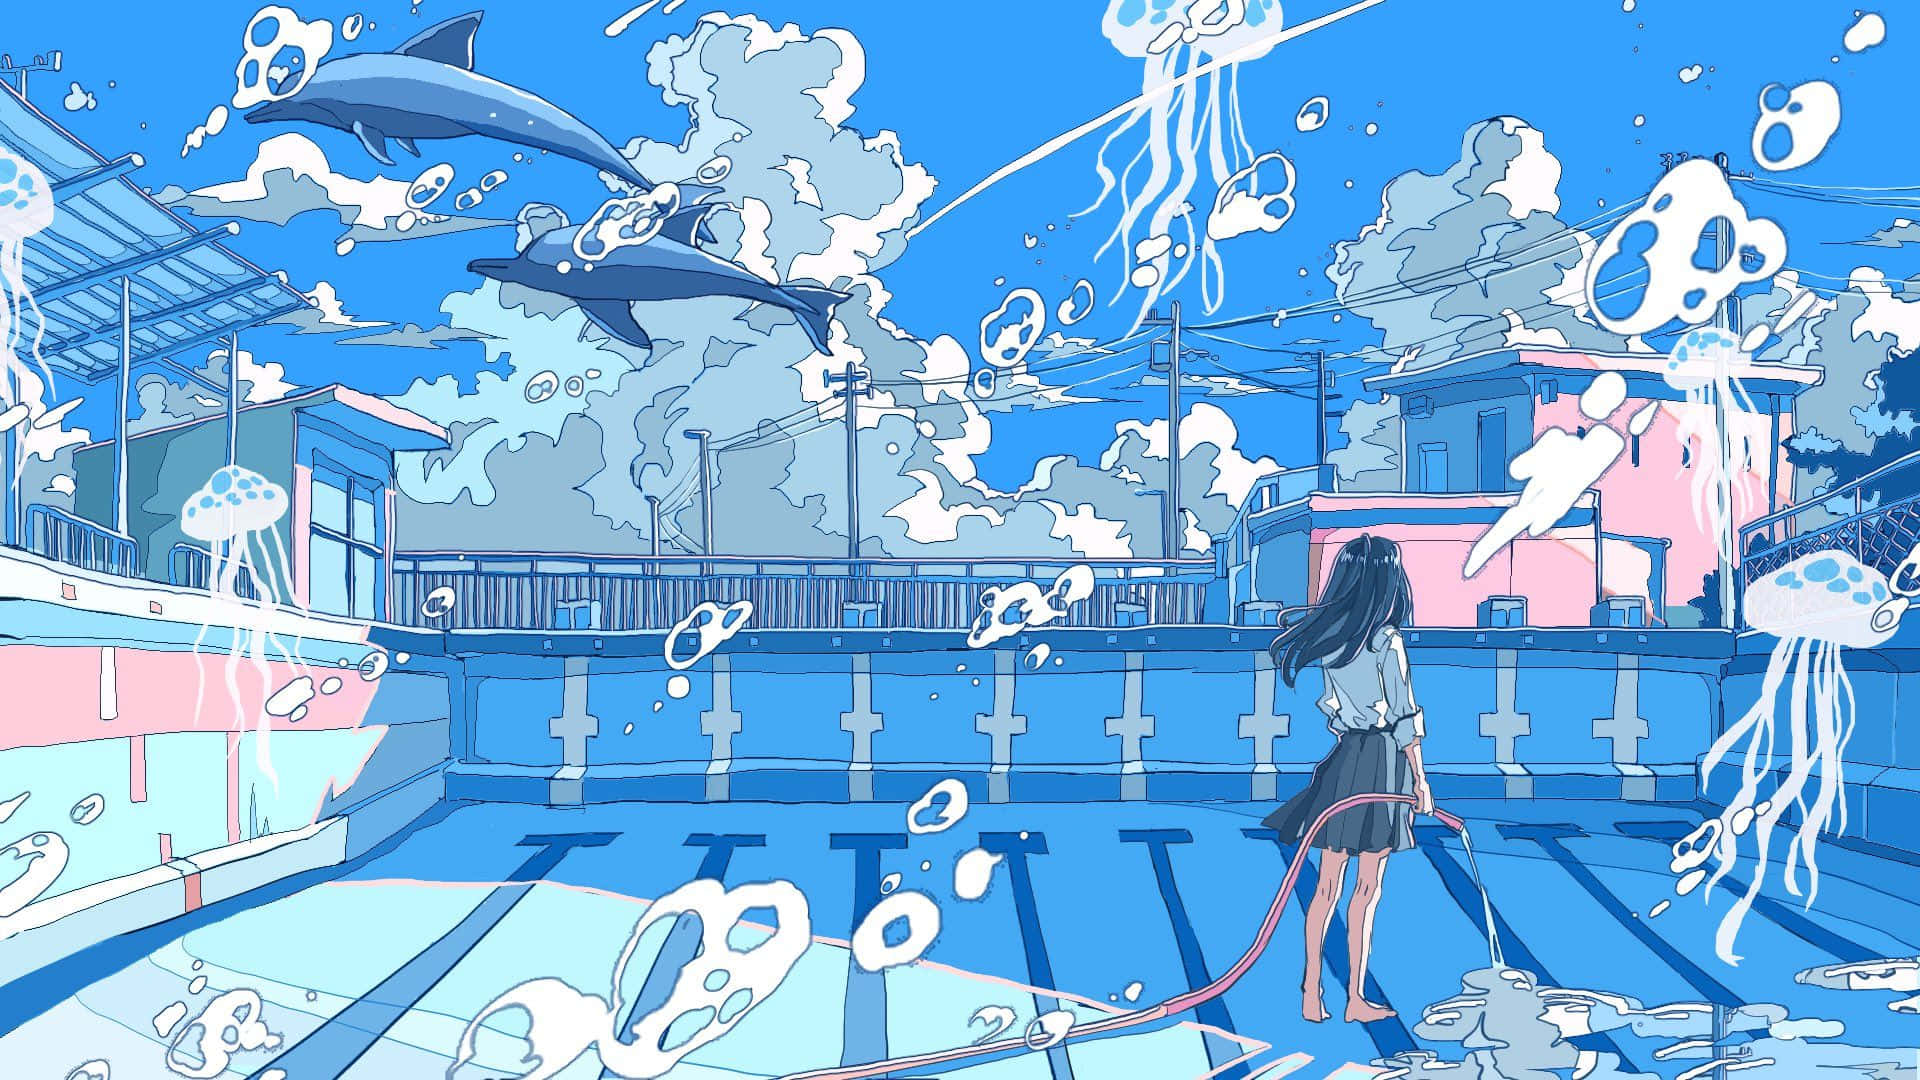 Fondode Pantalla Azul De Una Chica De Anime En Una Piscina Con Criaturas Marinas.